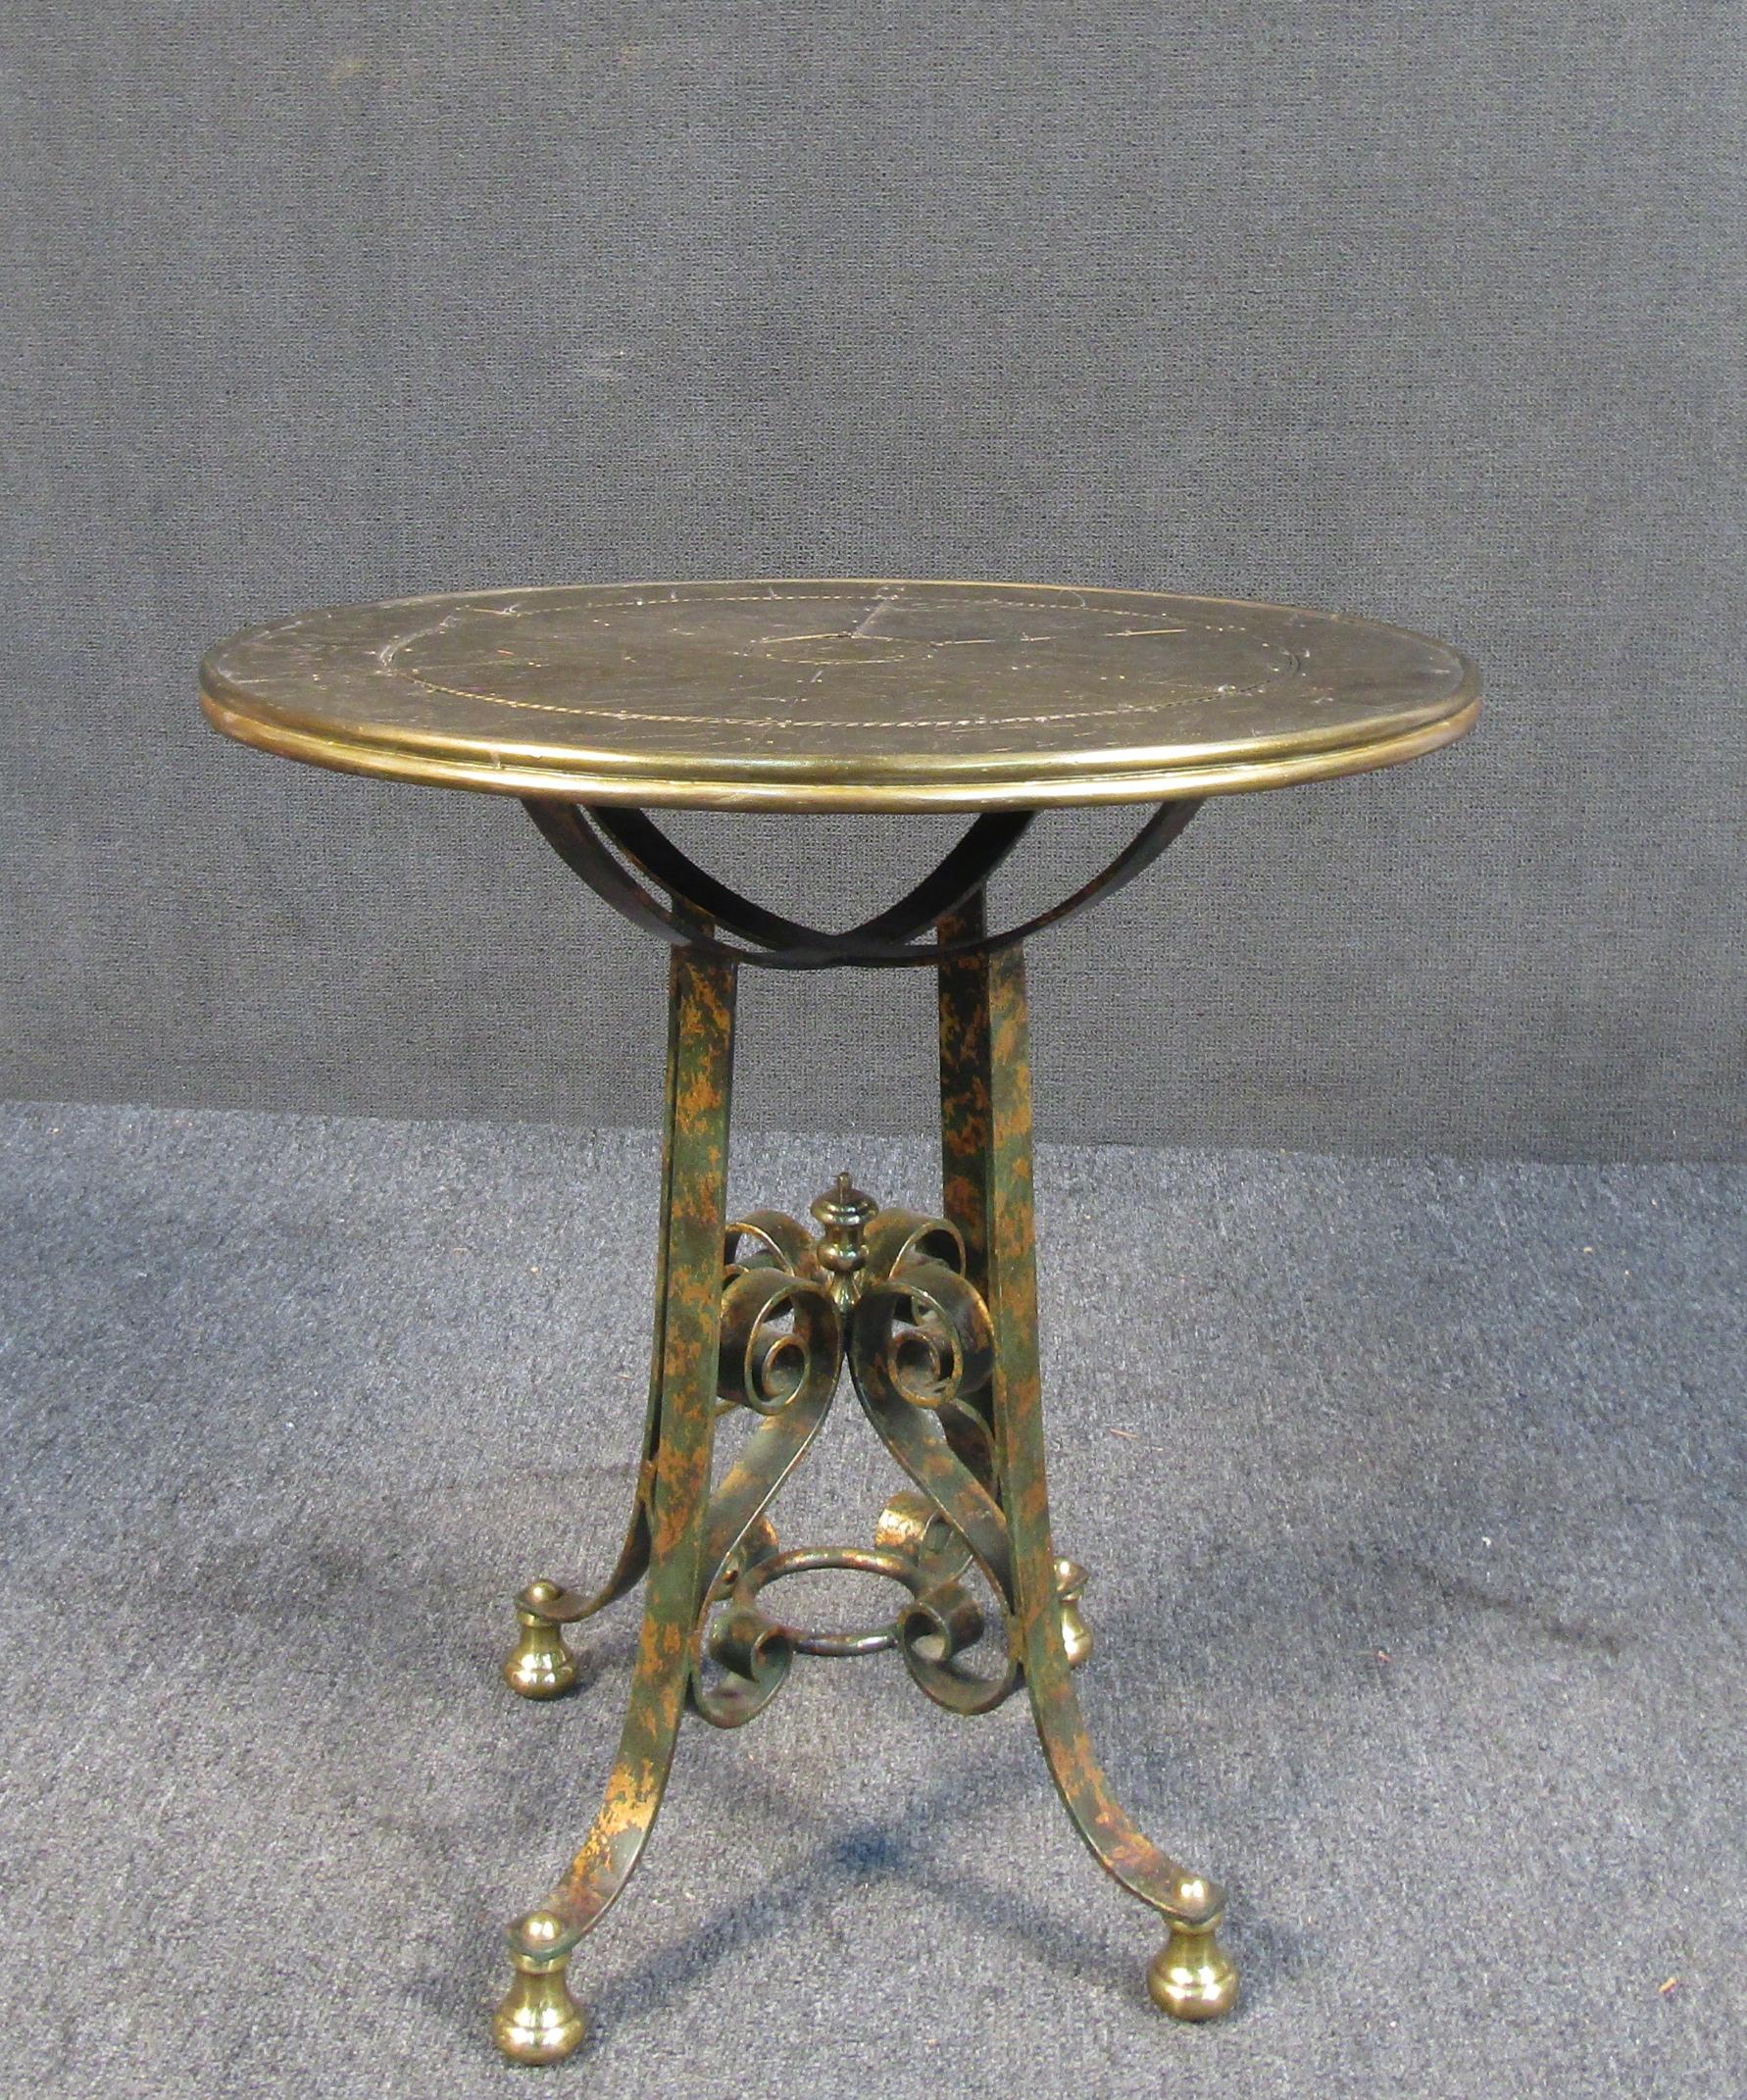 Cette table unique en métal présente un plateau d'inspiration asiatique, ainsi que des accents métalliques roulés et ornés. La finition dorée donne à cette pièce un aspect sophistiqué, parfait pour toute maison ou bureau de style